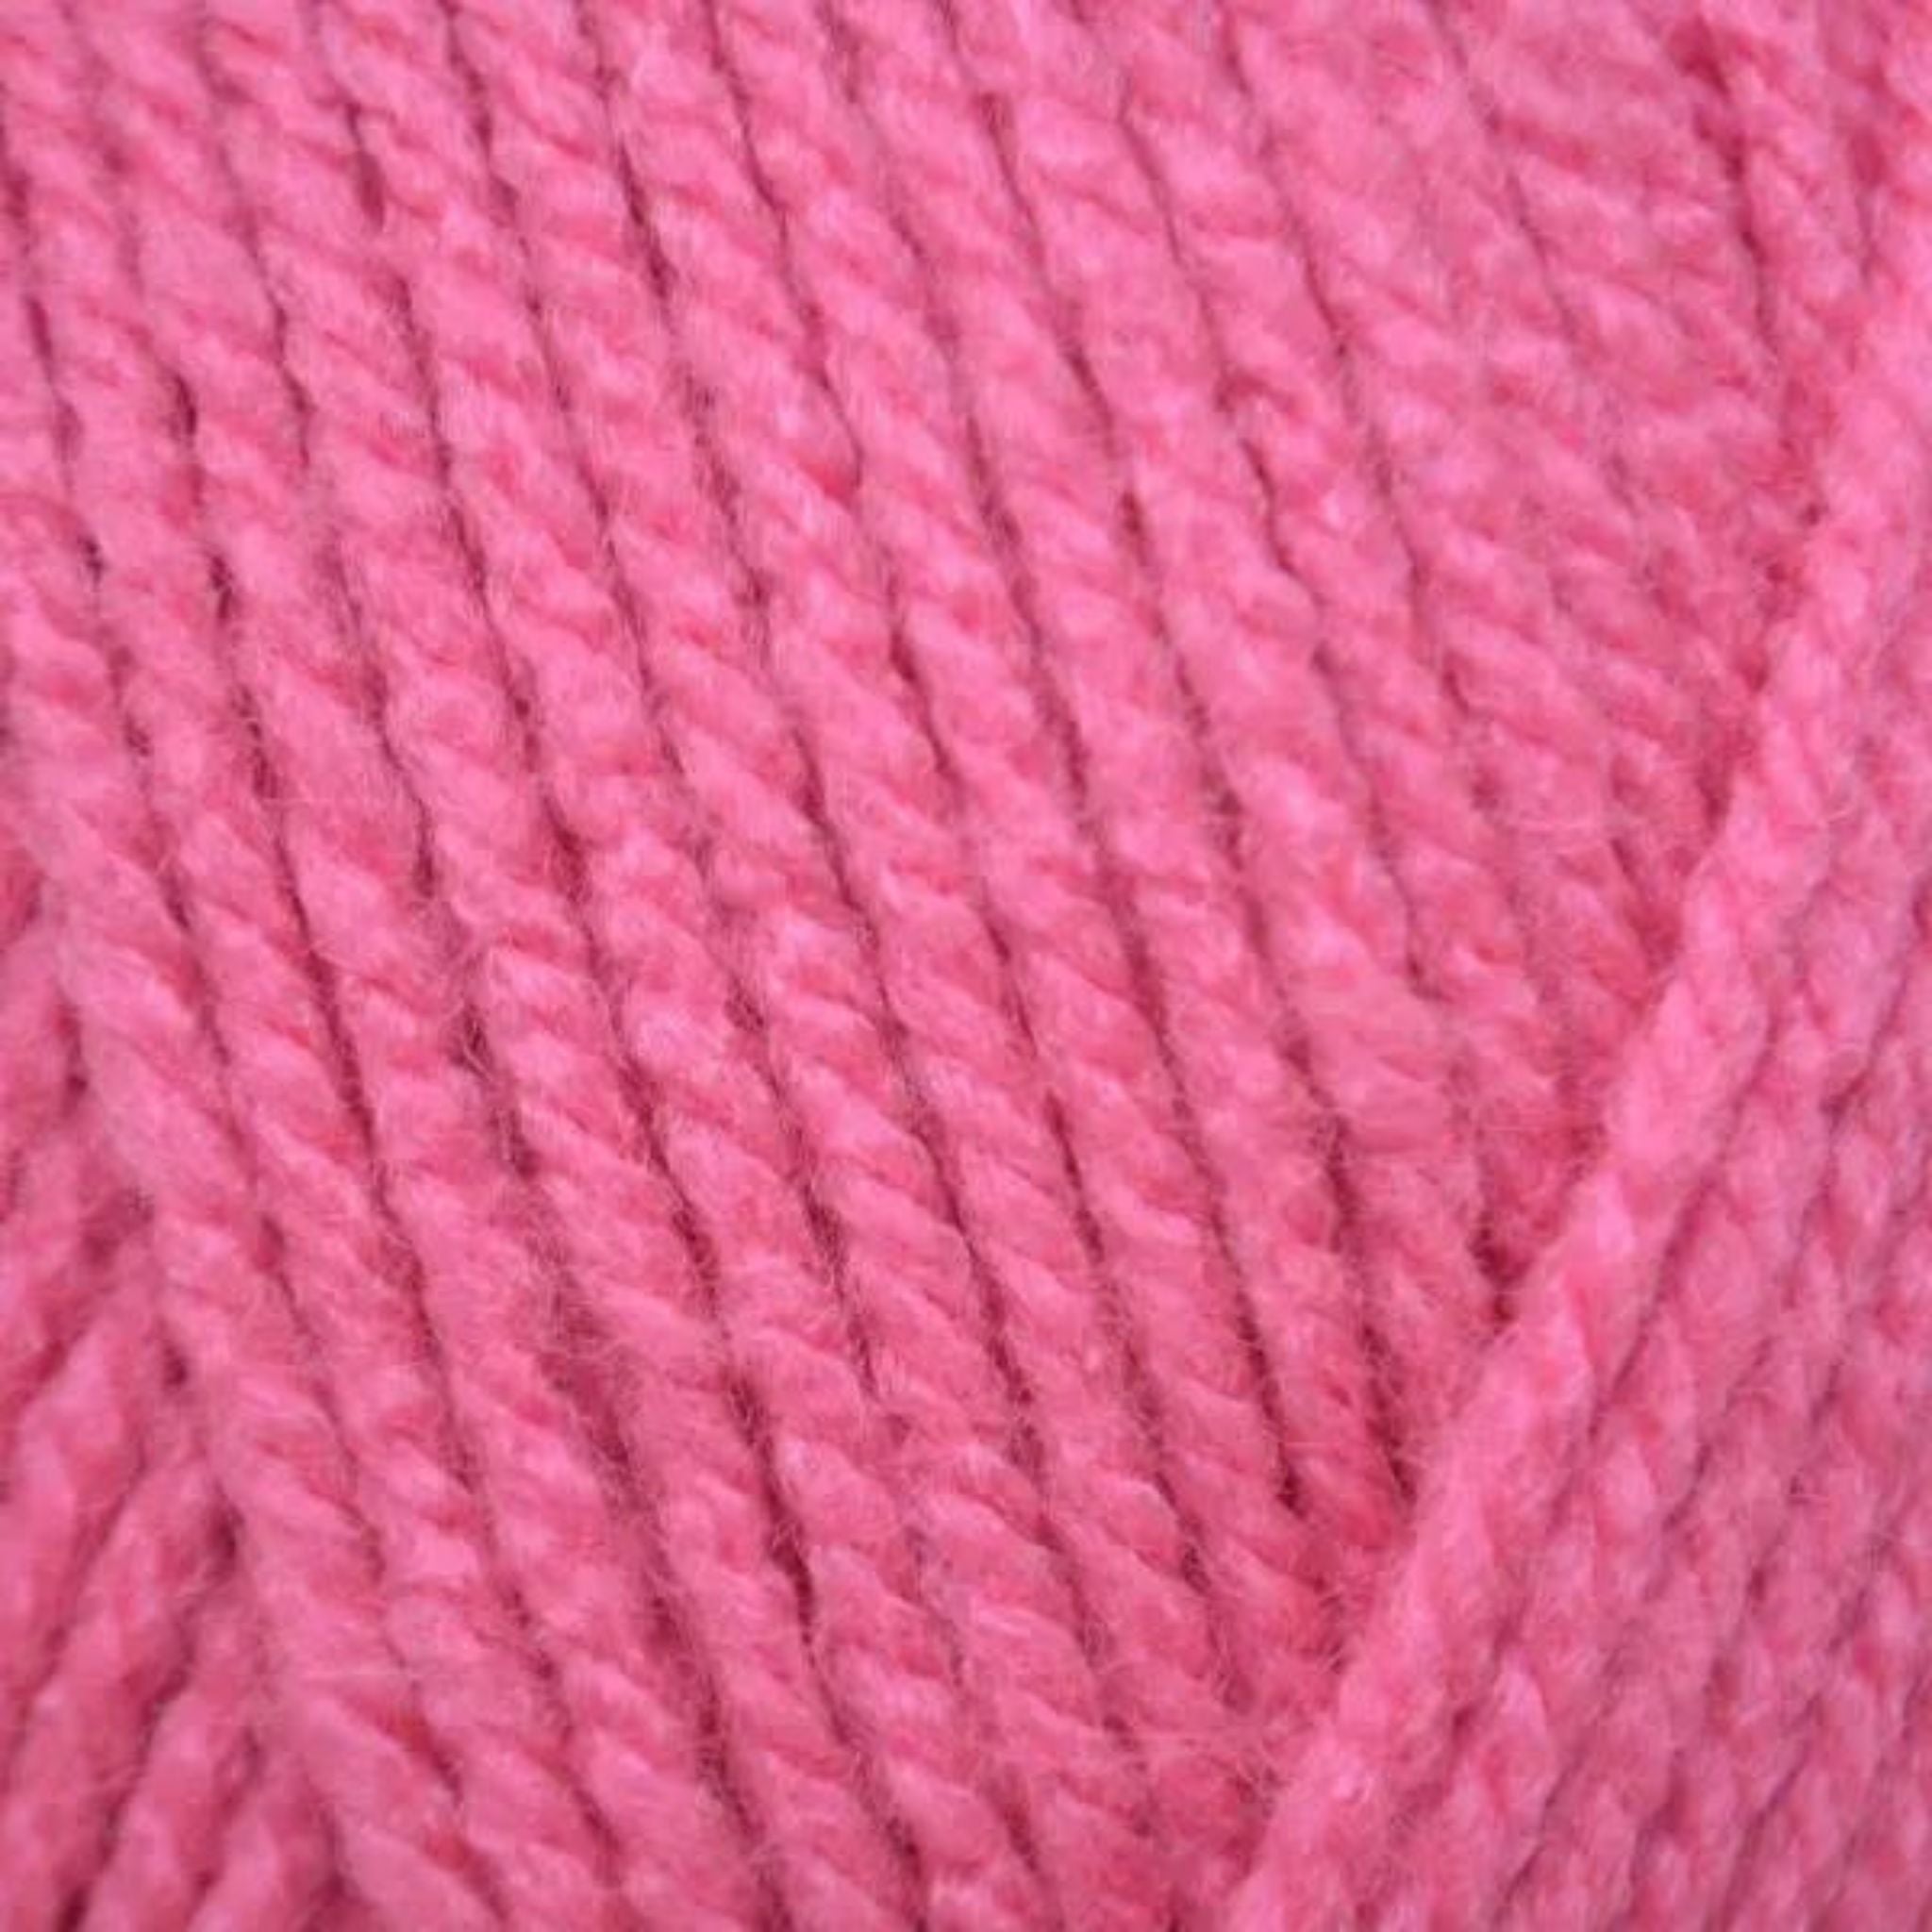 Bubblegum pink acrylic aran wool 100g ball - Emu Yarns